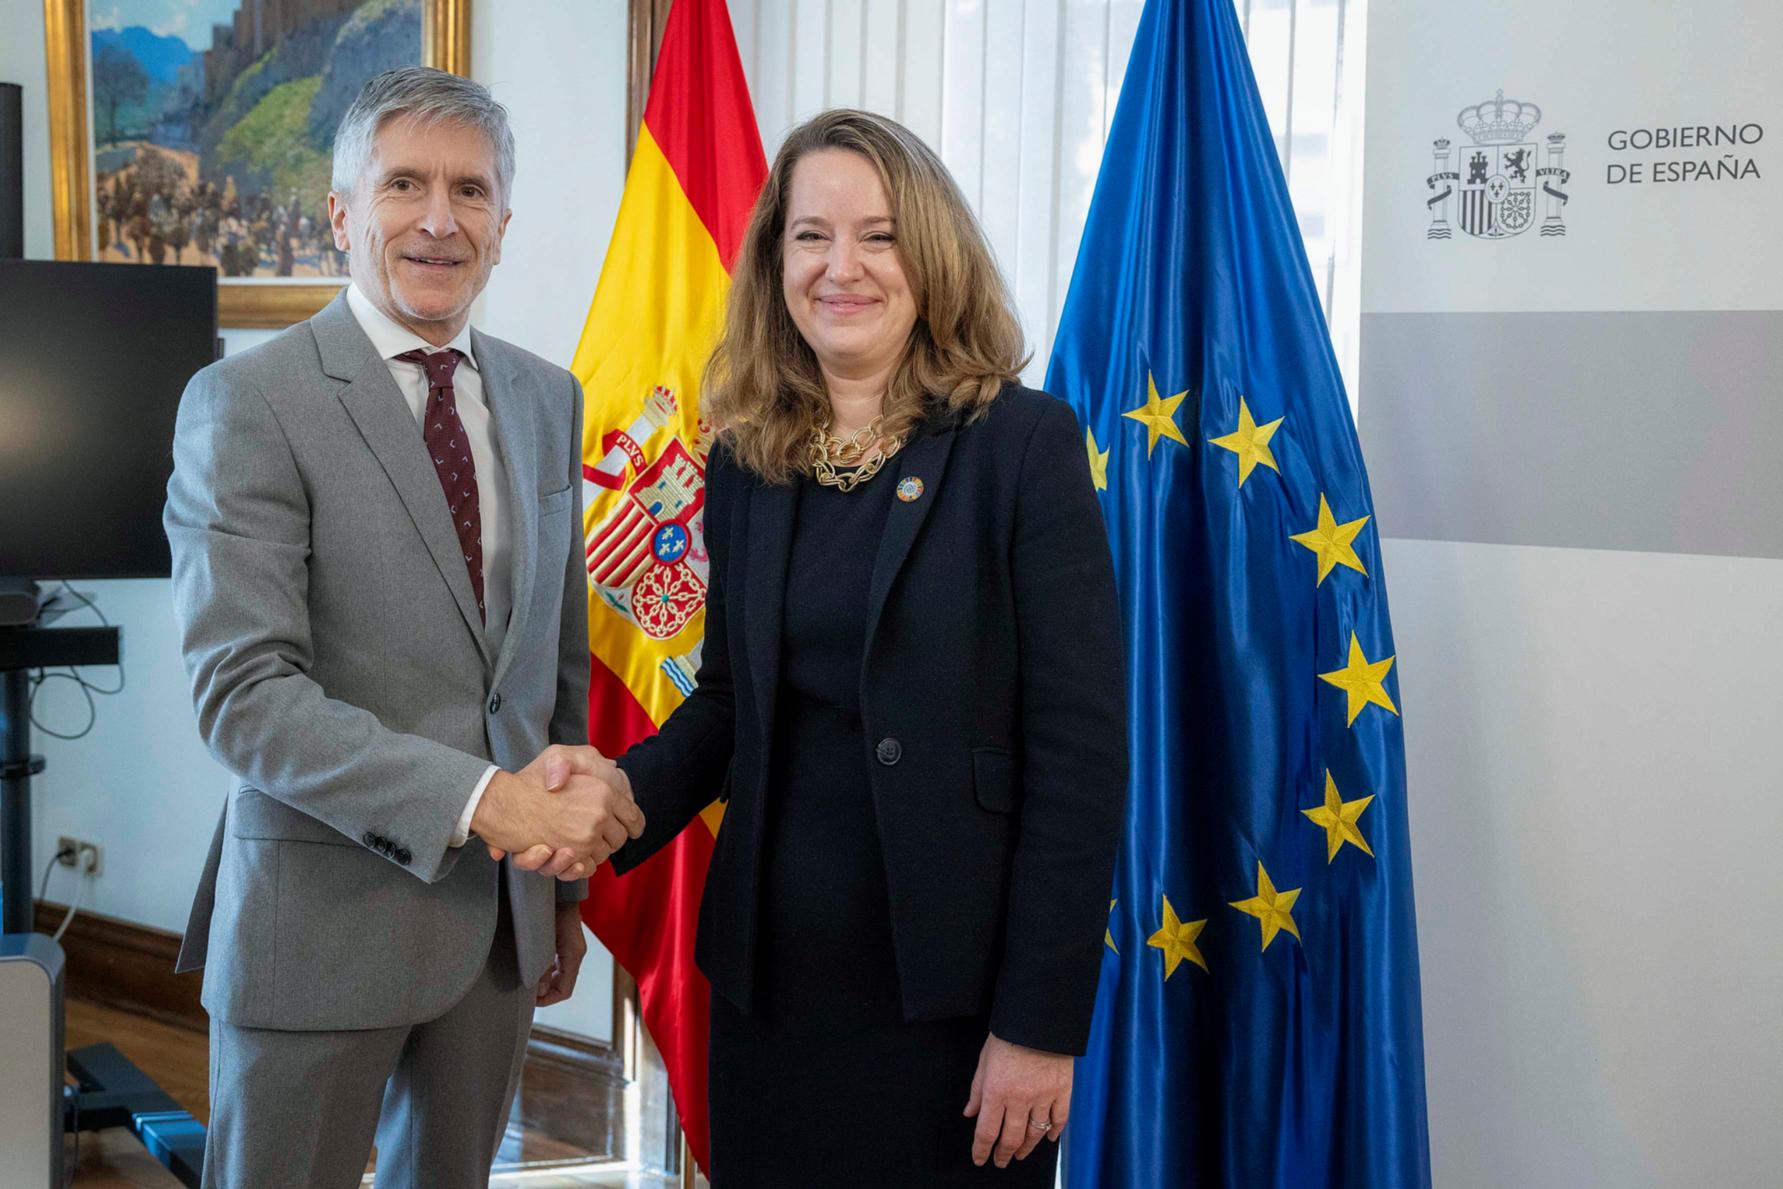 Grande-Marlaska reafirma el compromiso de España con una “migración segura, ordenada y regular”